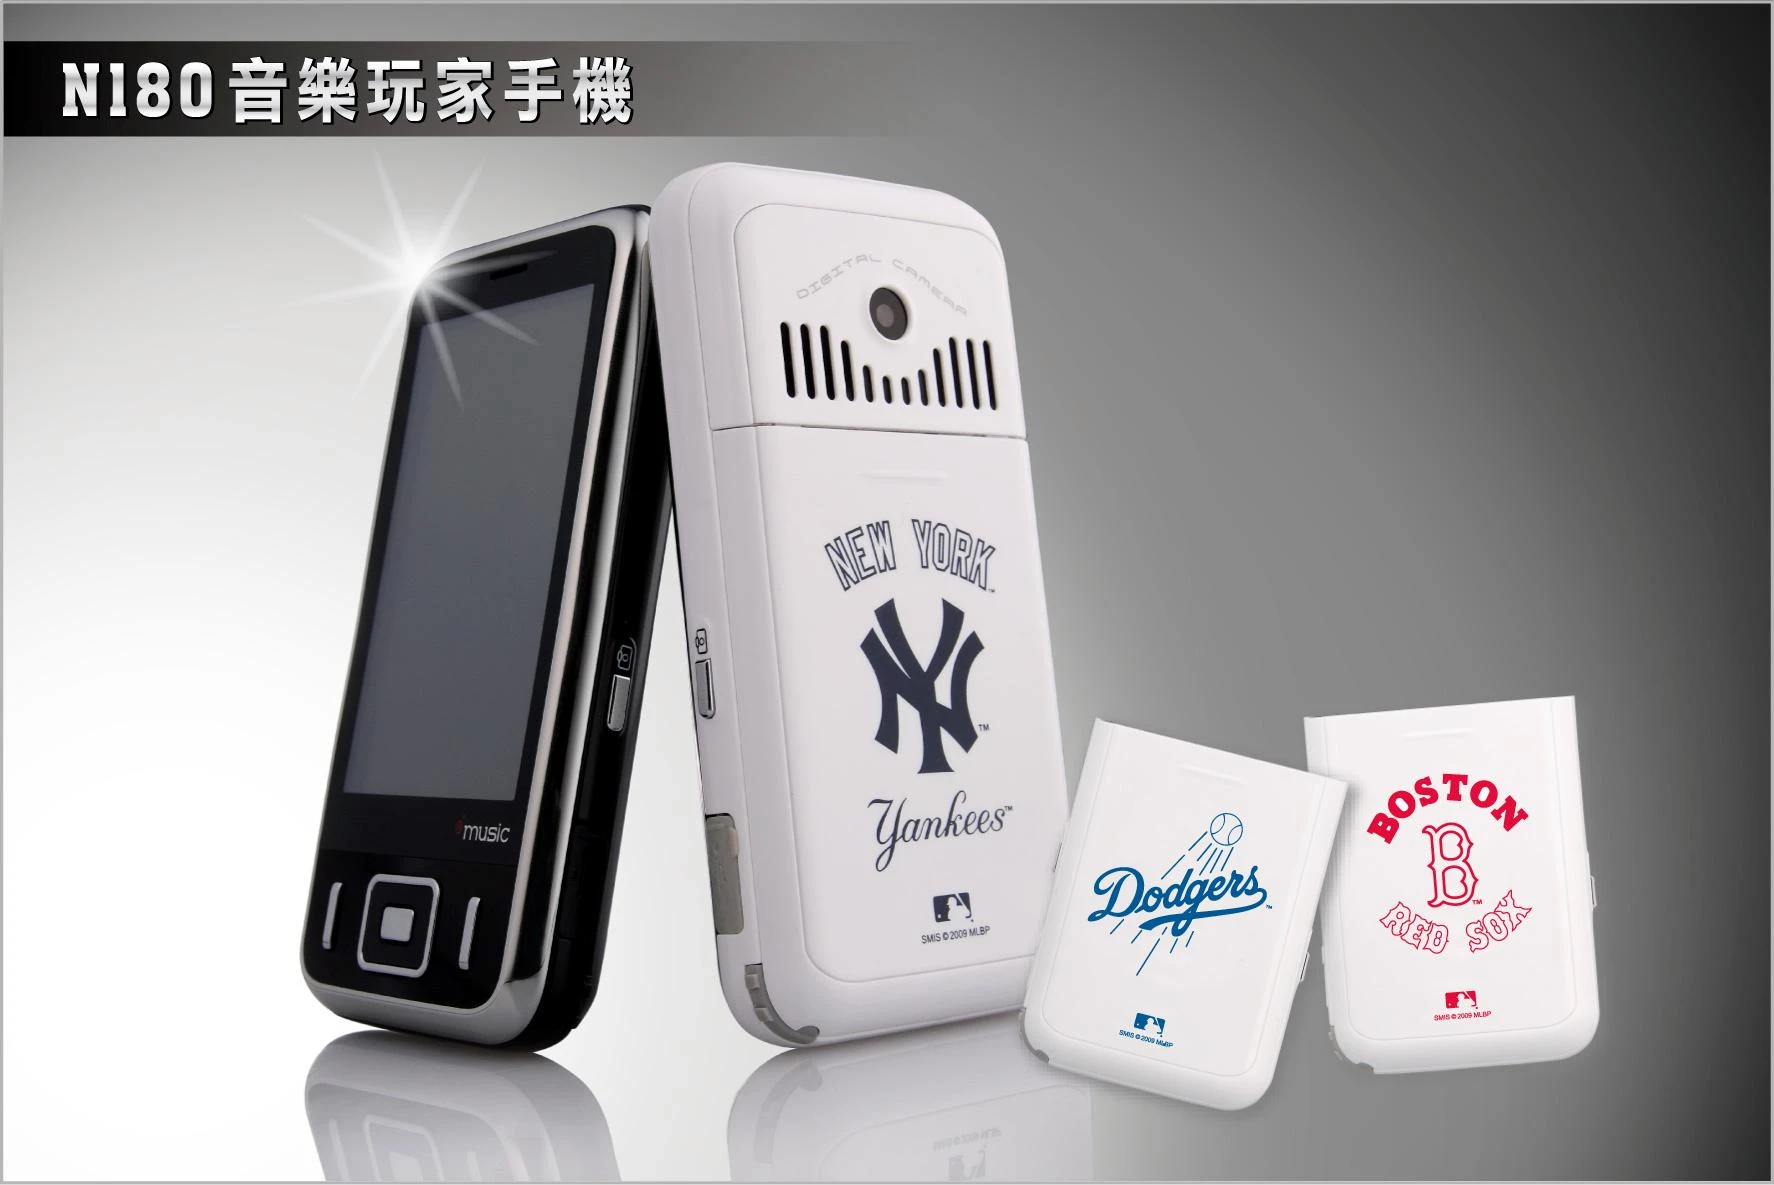 美國職棒大聯盟MLB獨家授權 音樂玩家手機N180  2009搖擺上市